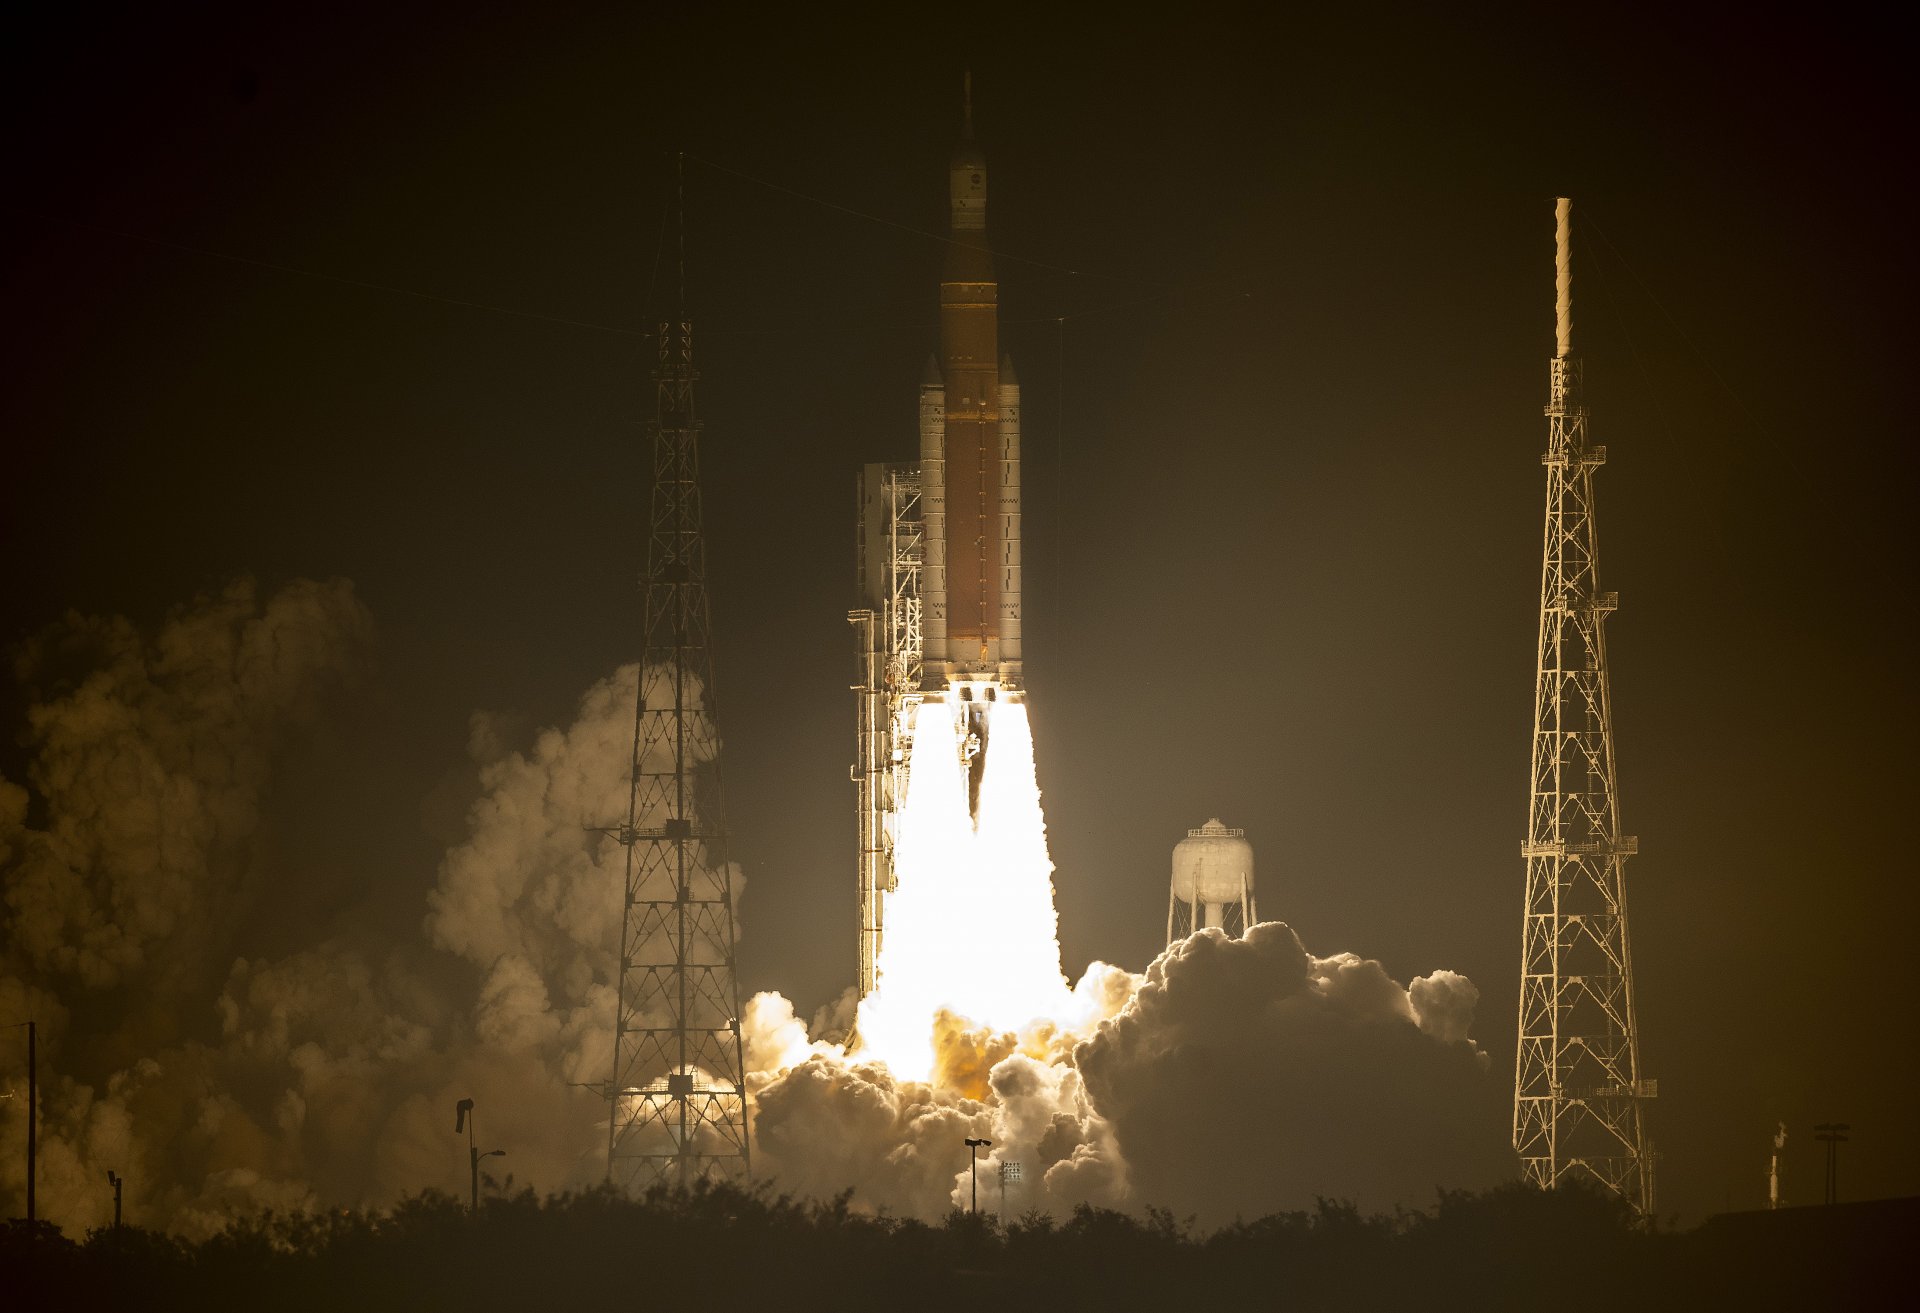  Ракетата Artemis I Space Launch System (SLS) на НАСА с прикрепената капсула Orion изстреля в космическия център Кенеди на НАСА на 16 ноември 2022 г. в Кейп Канаверал, Флорида. 